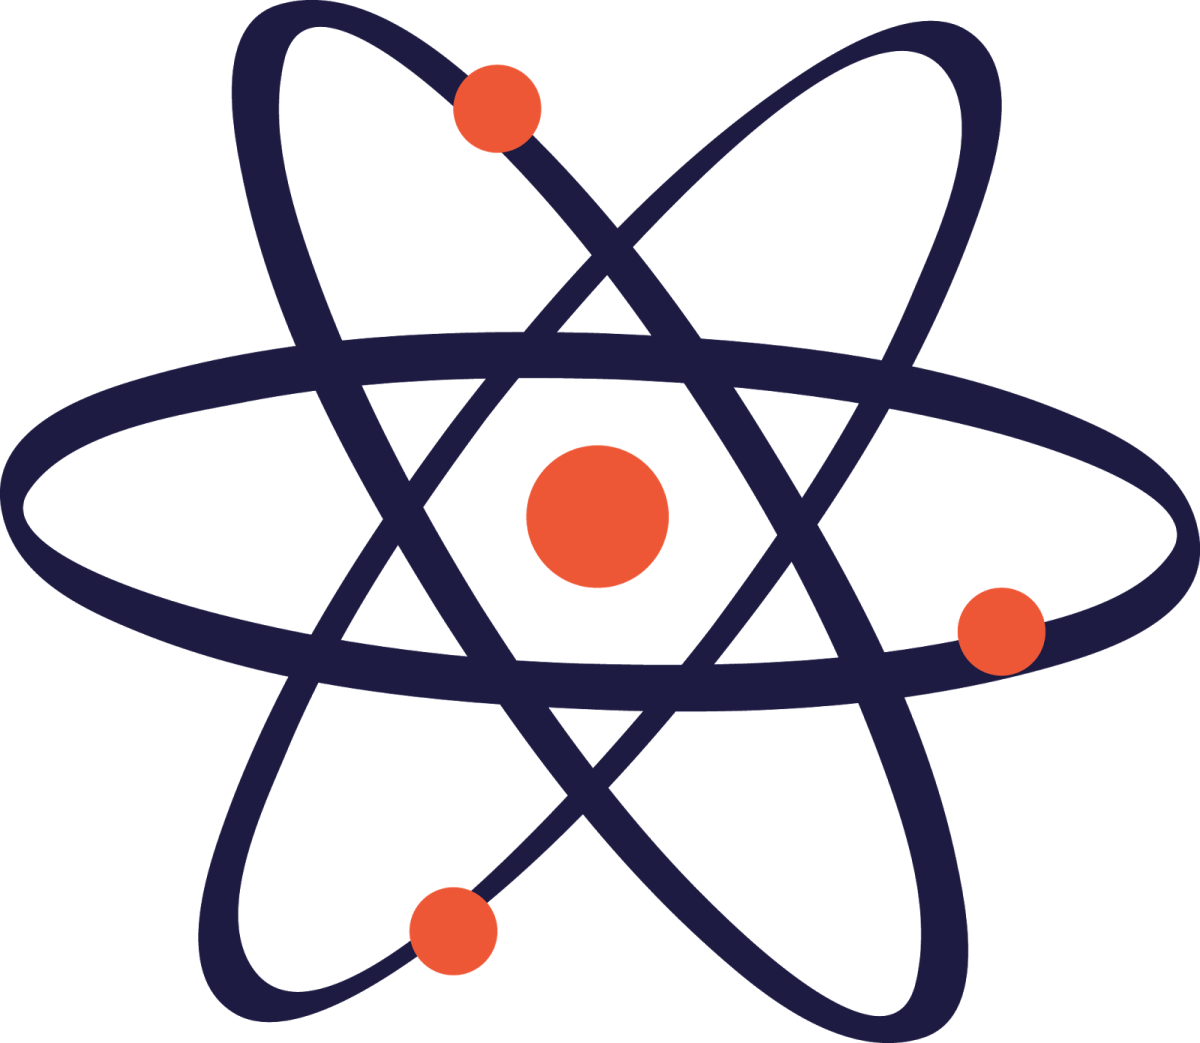 Элементы ядерной физики. Атом рисунок. Атом без фона. Символ ядерной физики. Символ науки.